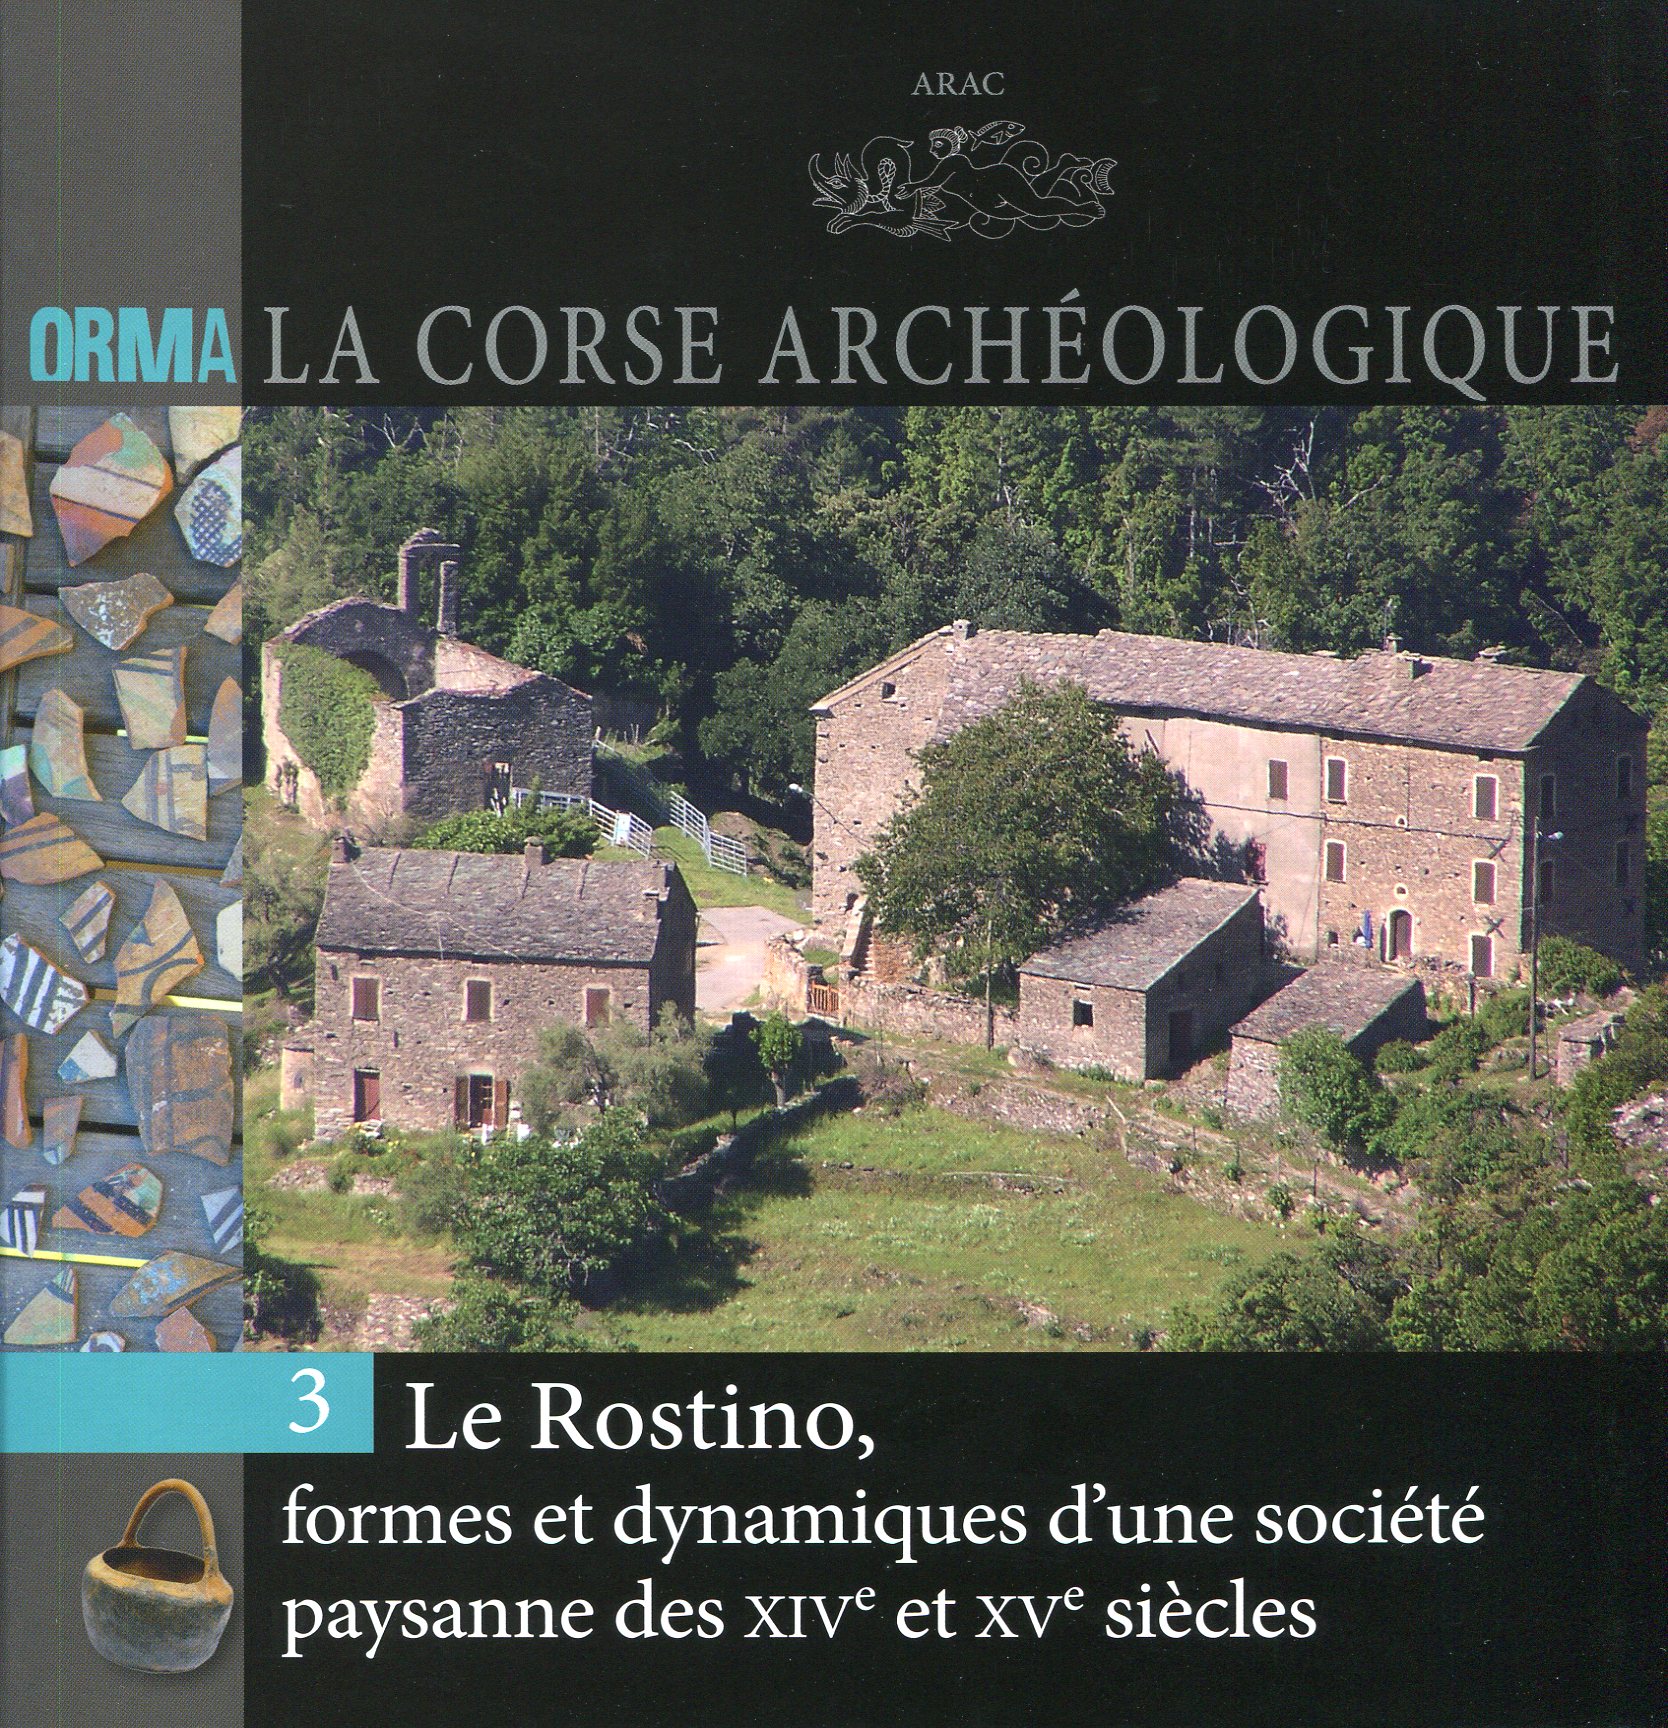 Le Rostino, formes et dynamiques d'une société paysanne des XIVe et XVe siècles, (Orma, La Corse archéologique 3), 2016, 60 p.